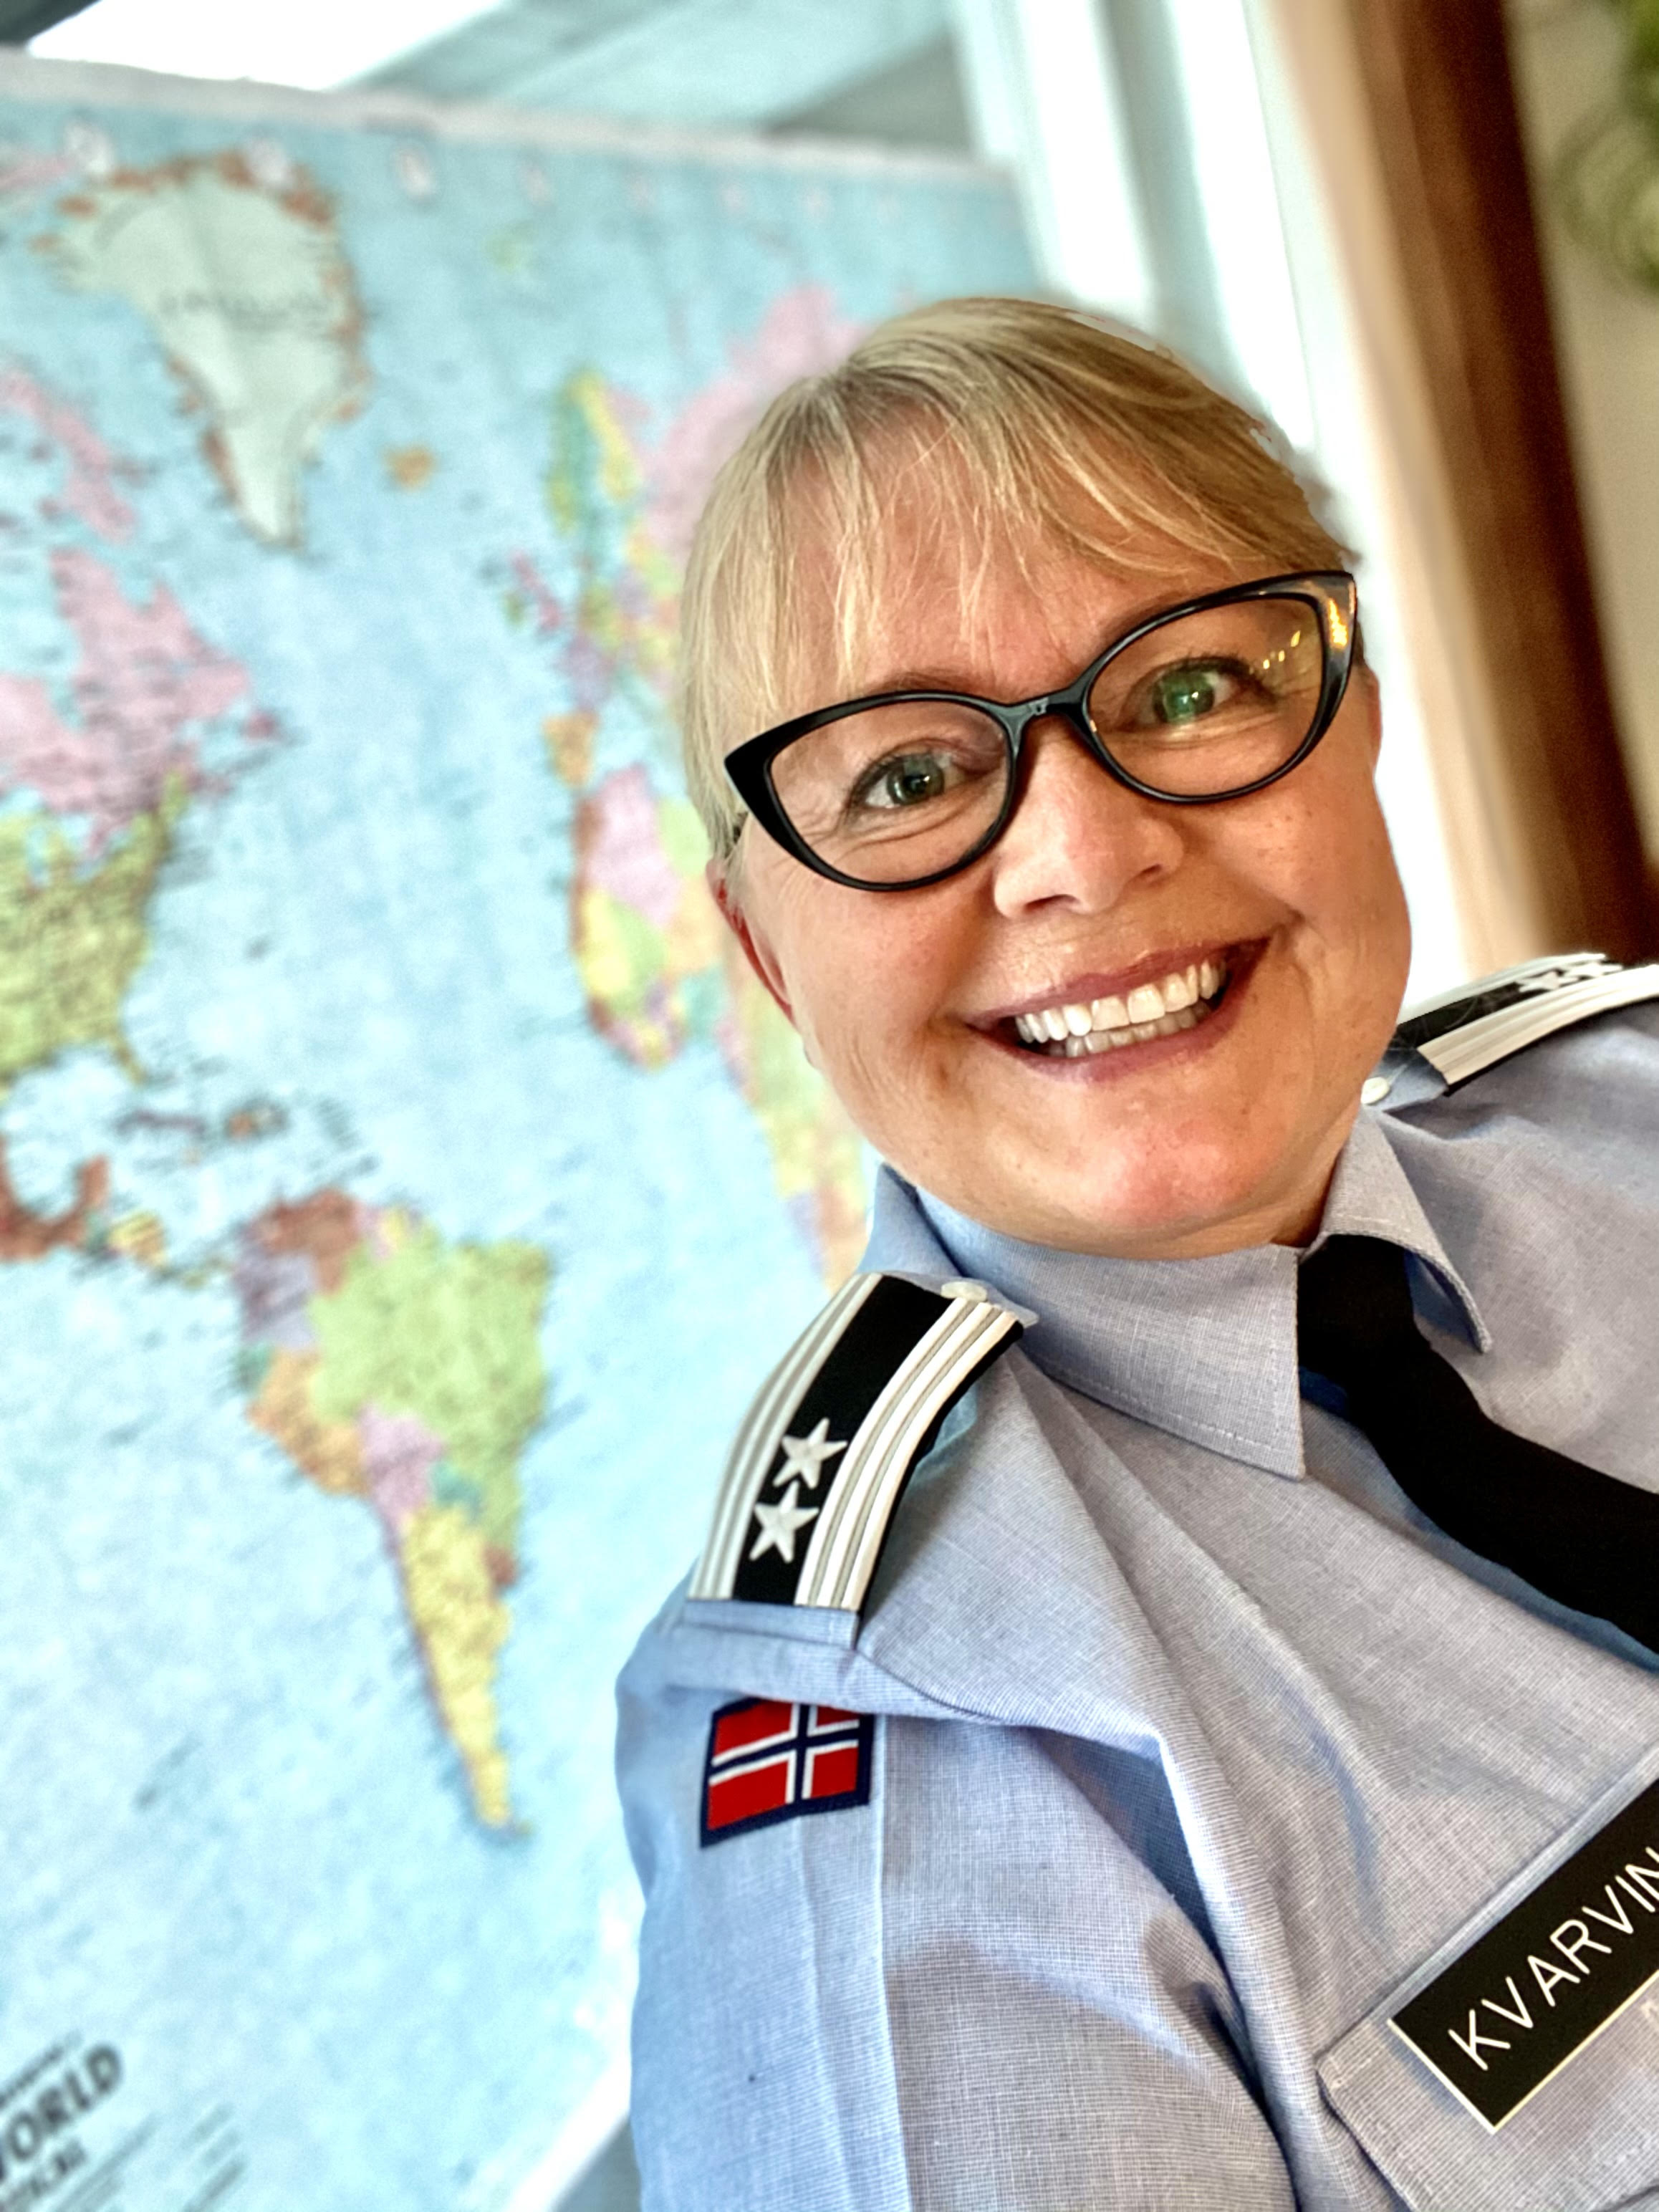 Oberstløytnant Lena Kvarving i uniformsskjorte og slips. Ho smiler stort til kamera.